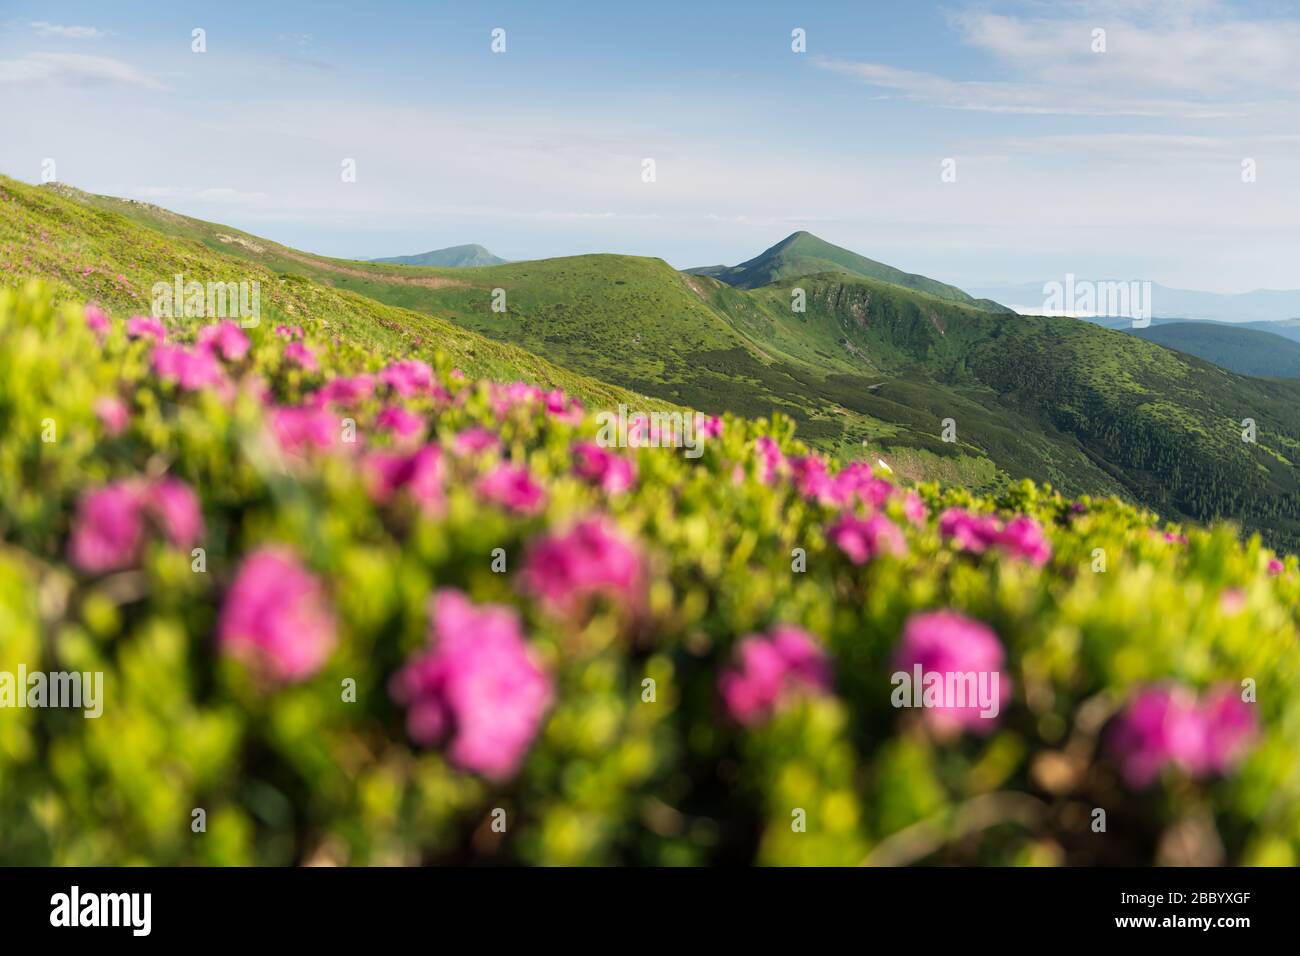 Les fleurs de Rhododendron couvraient la prairie des montagnes en été. Photographie de paysage Banque D'Images